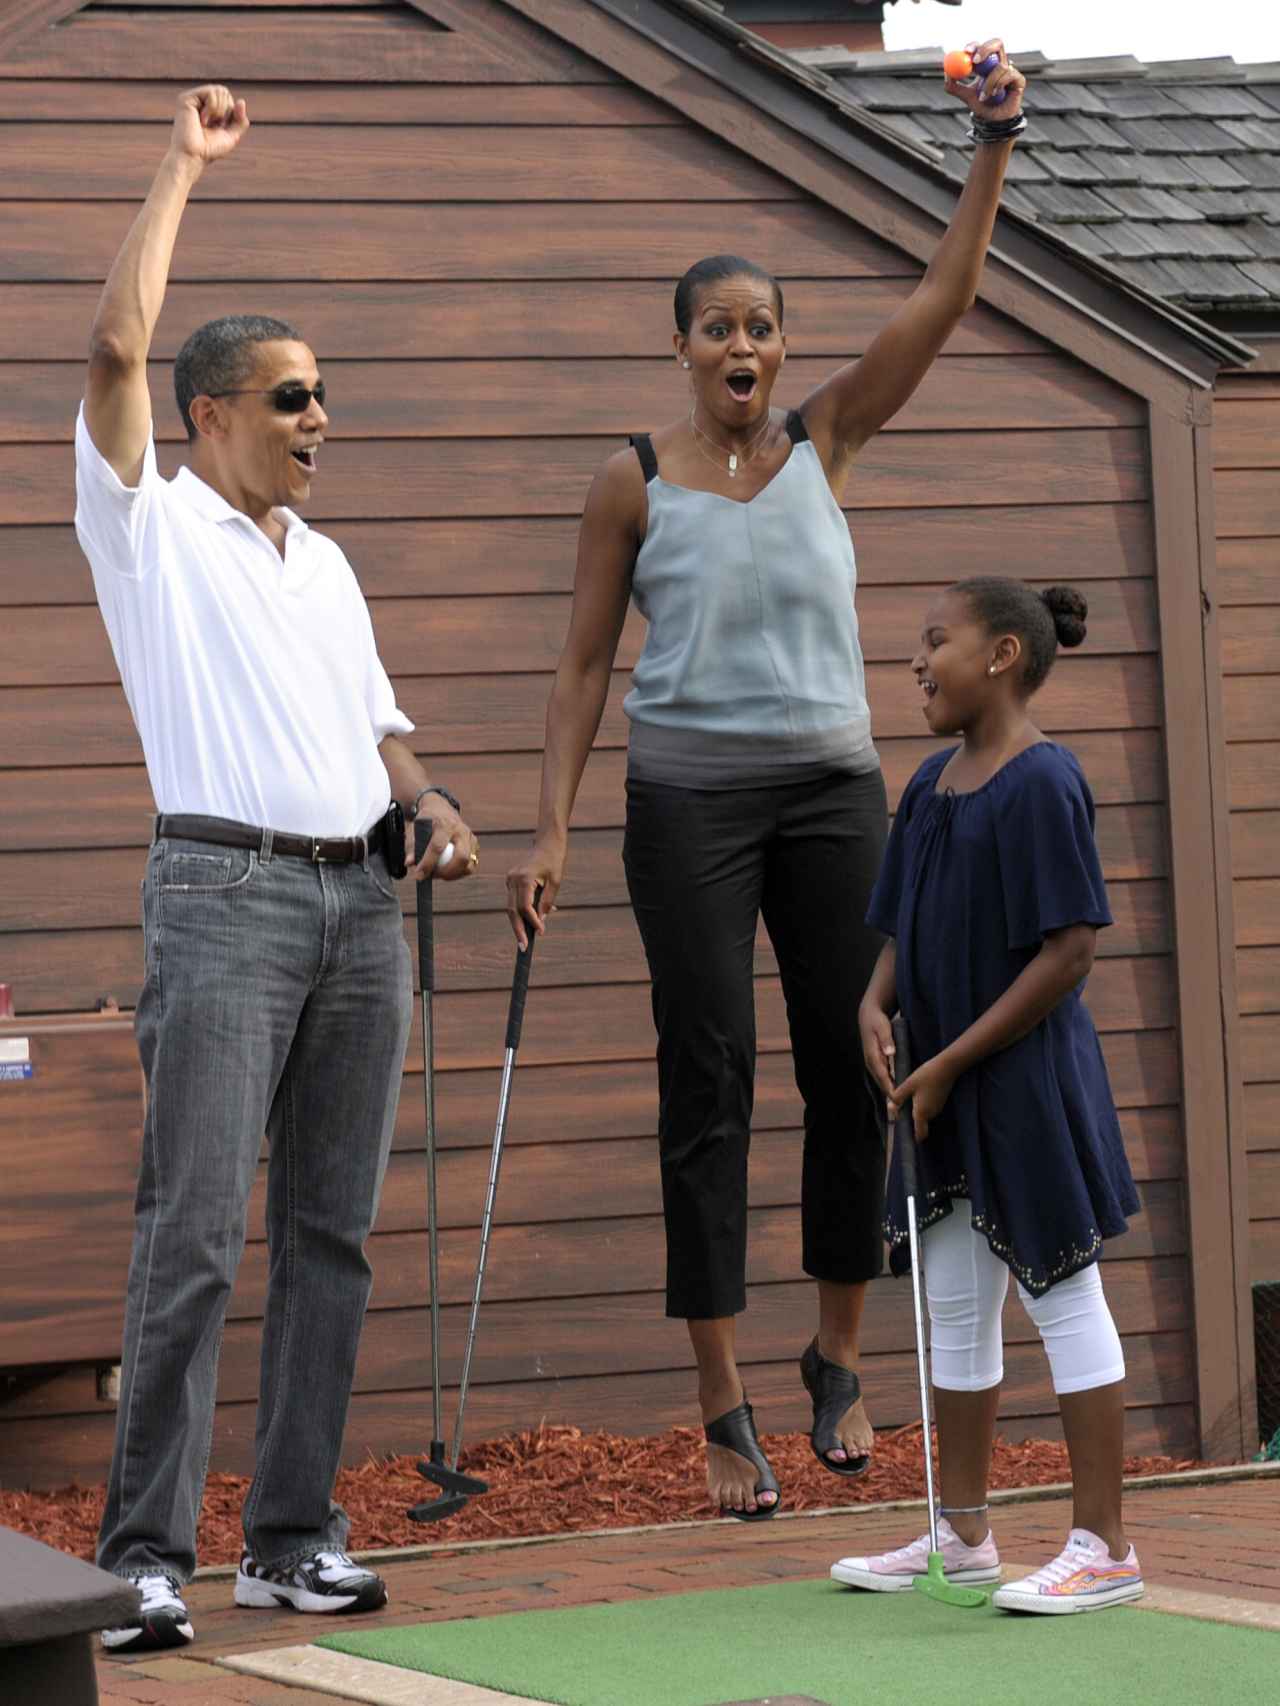 Los Obama son grandes amantes del golf y practican siempre que tienen ocasión.